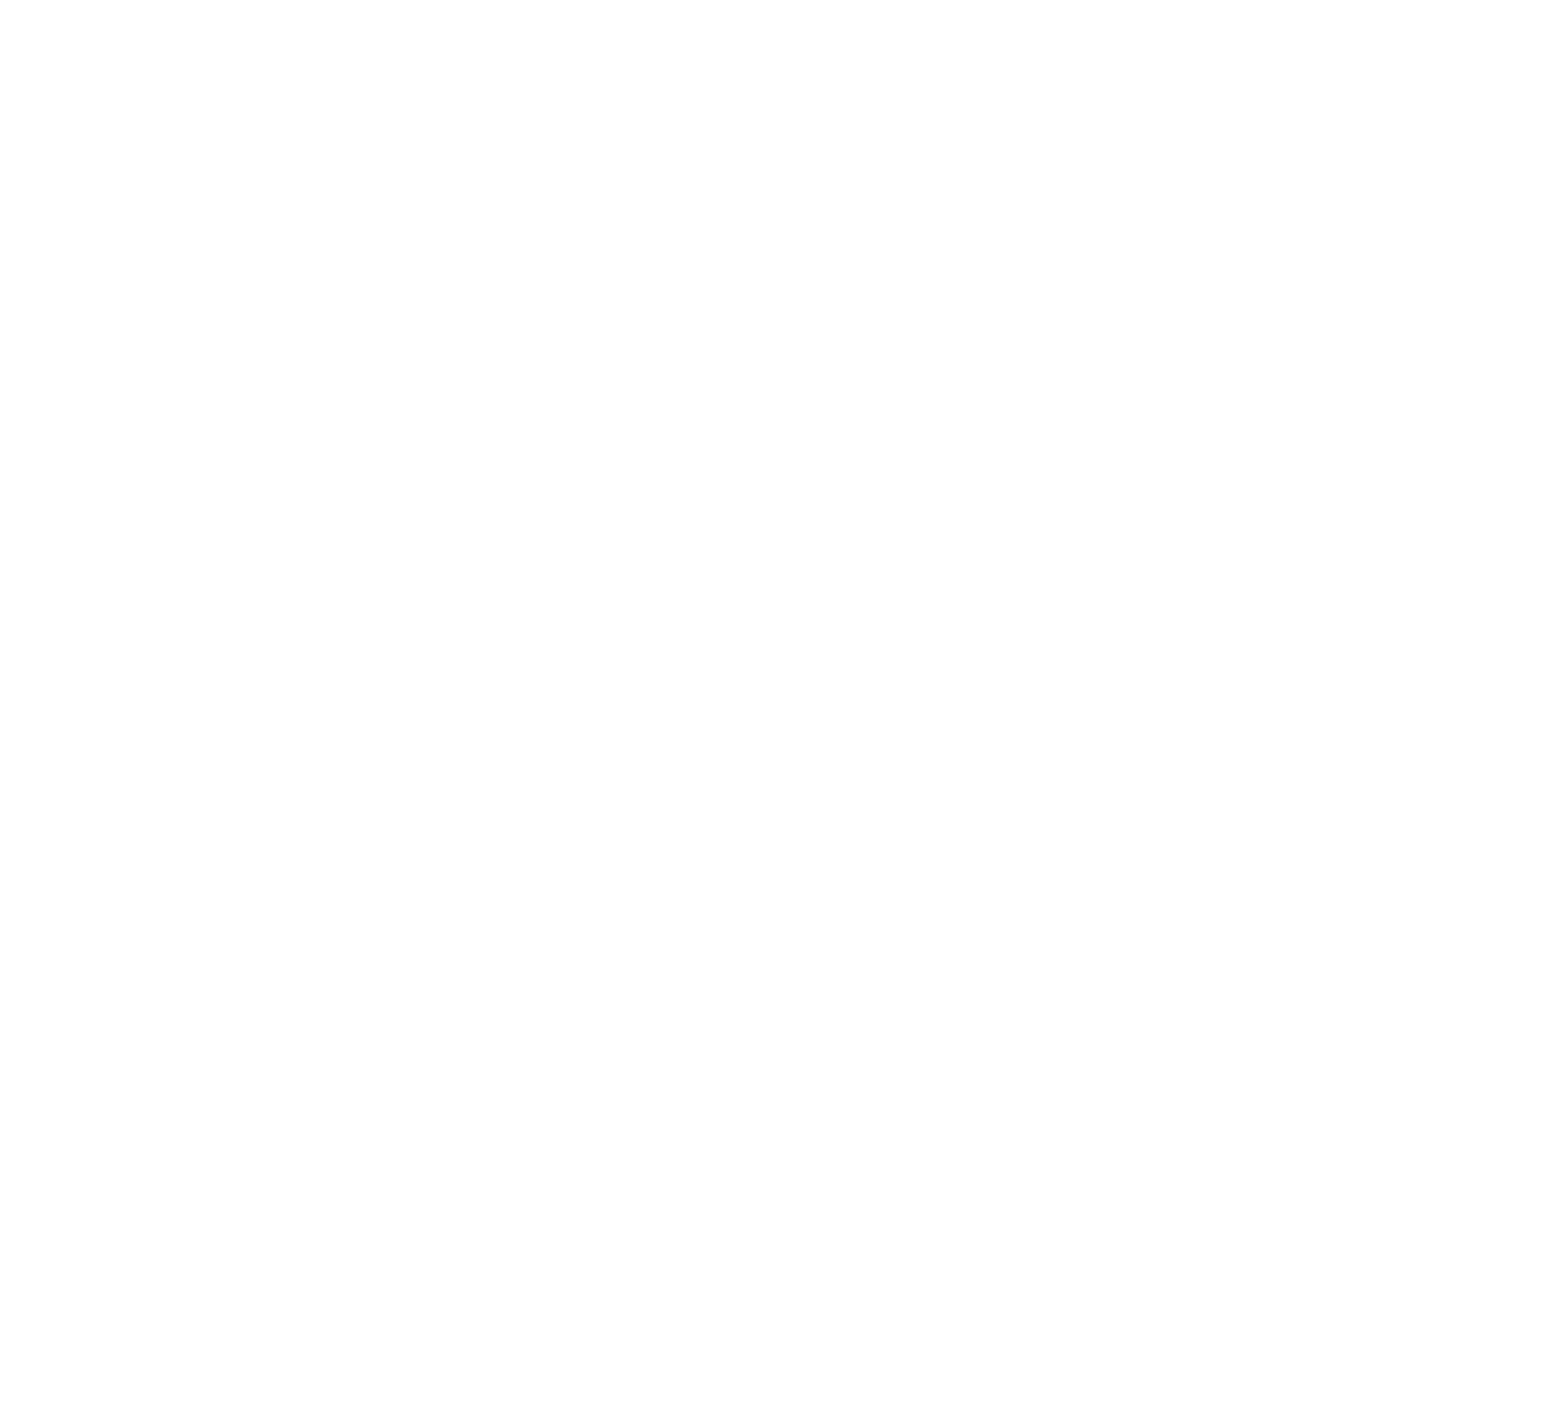 Avangrid logo for dark backgrounds (transparent PNG)